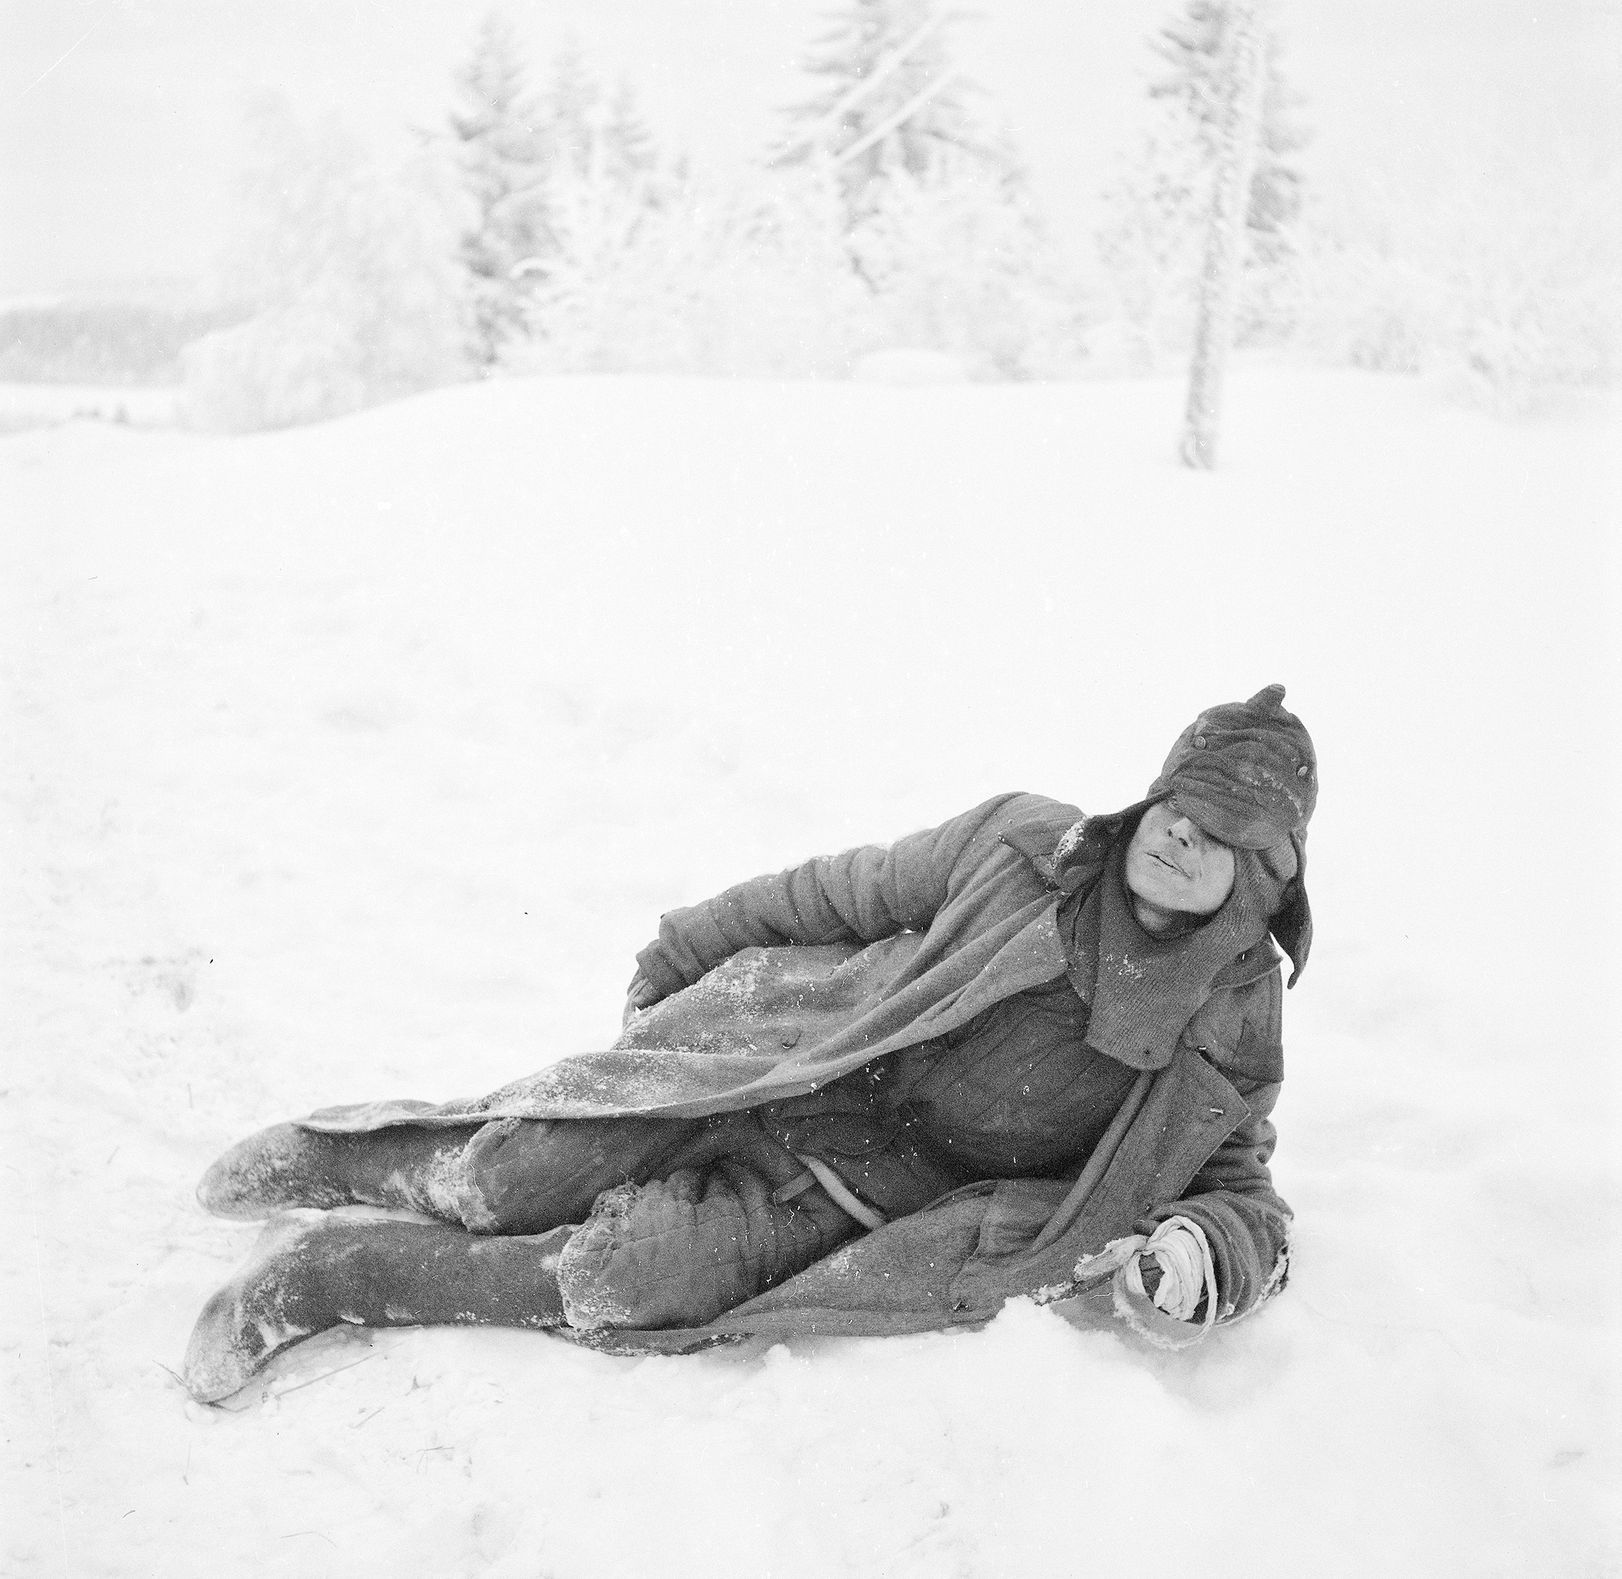 Fotogalerie / Zimní válka / Finsko vs. SSSR / 1939-1940 / Sa-Kuva